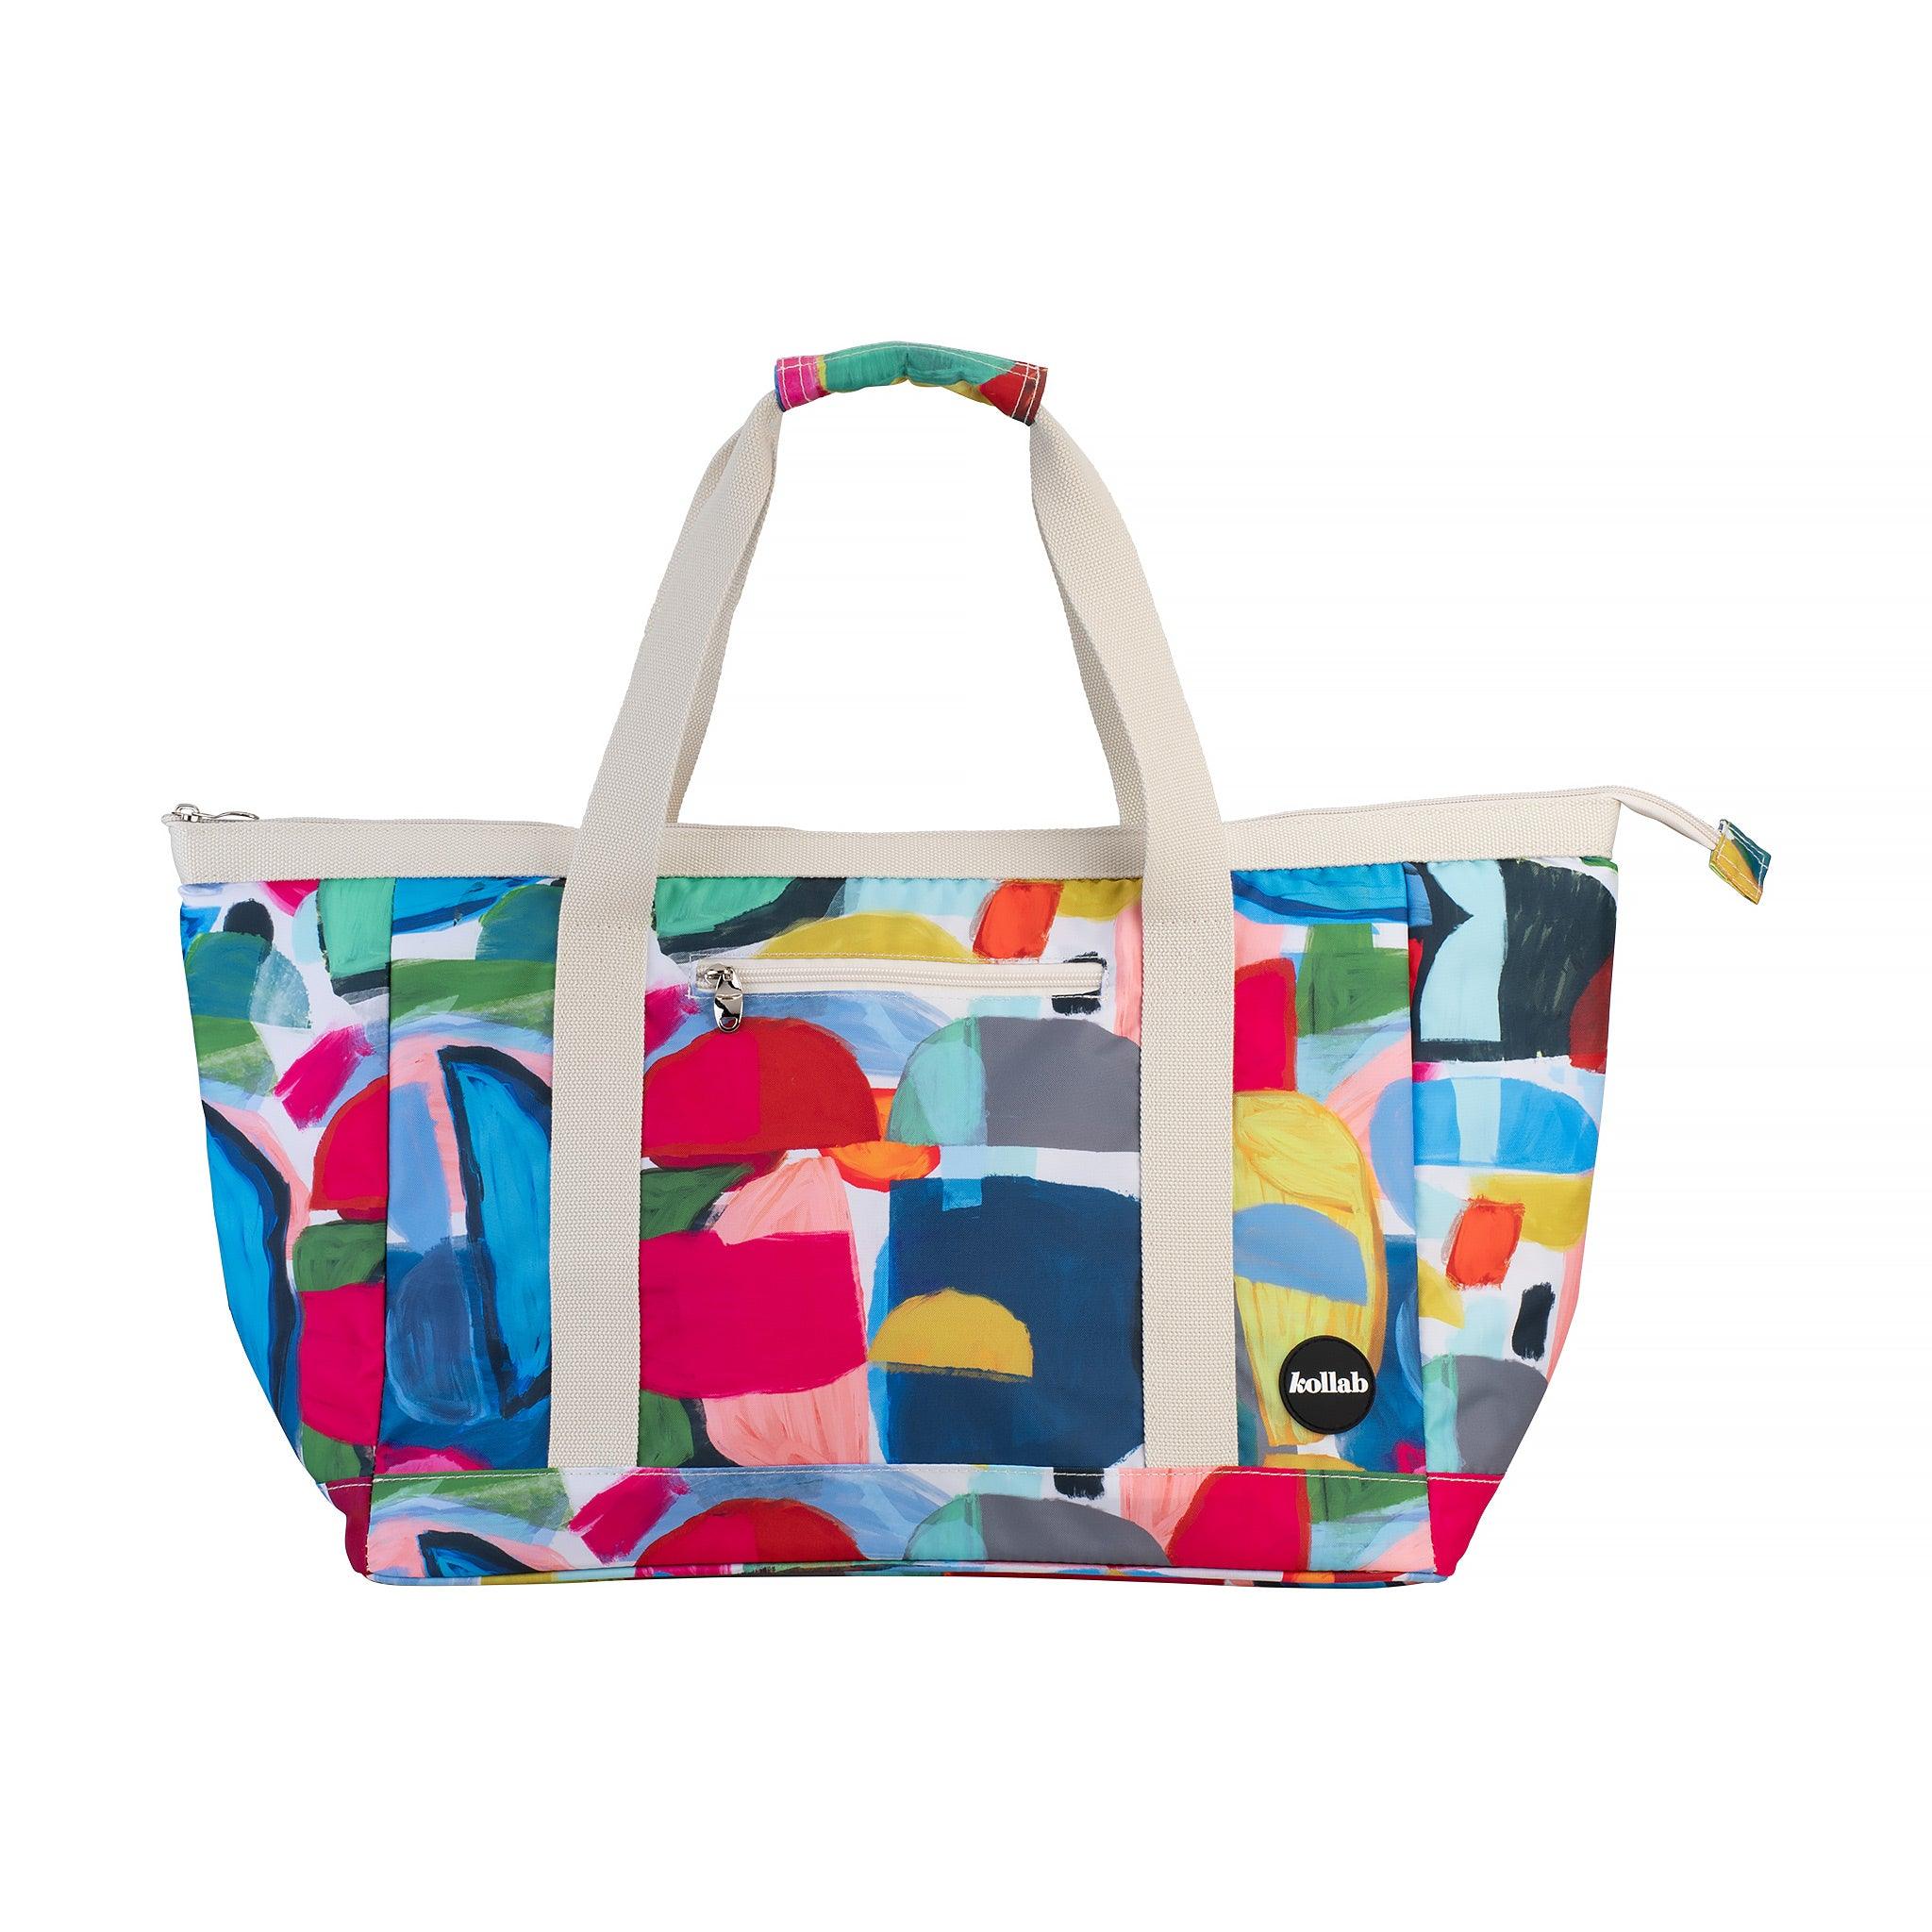 Kollab Holiday Tote Bag Moon Phase – Handbags from BJs Furniture Horsham